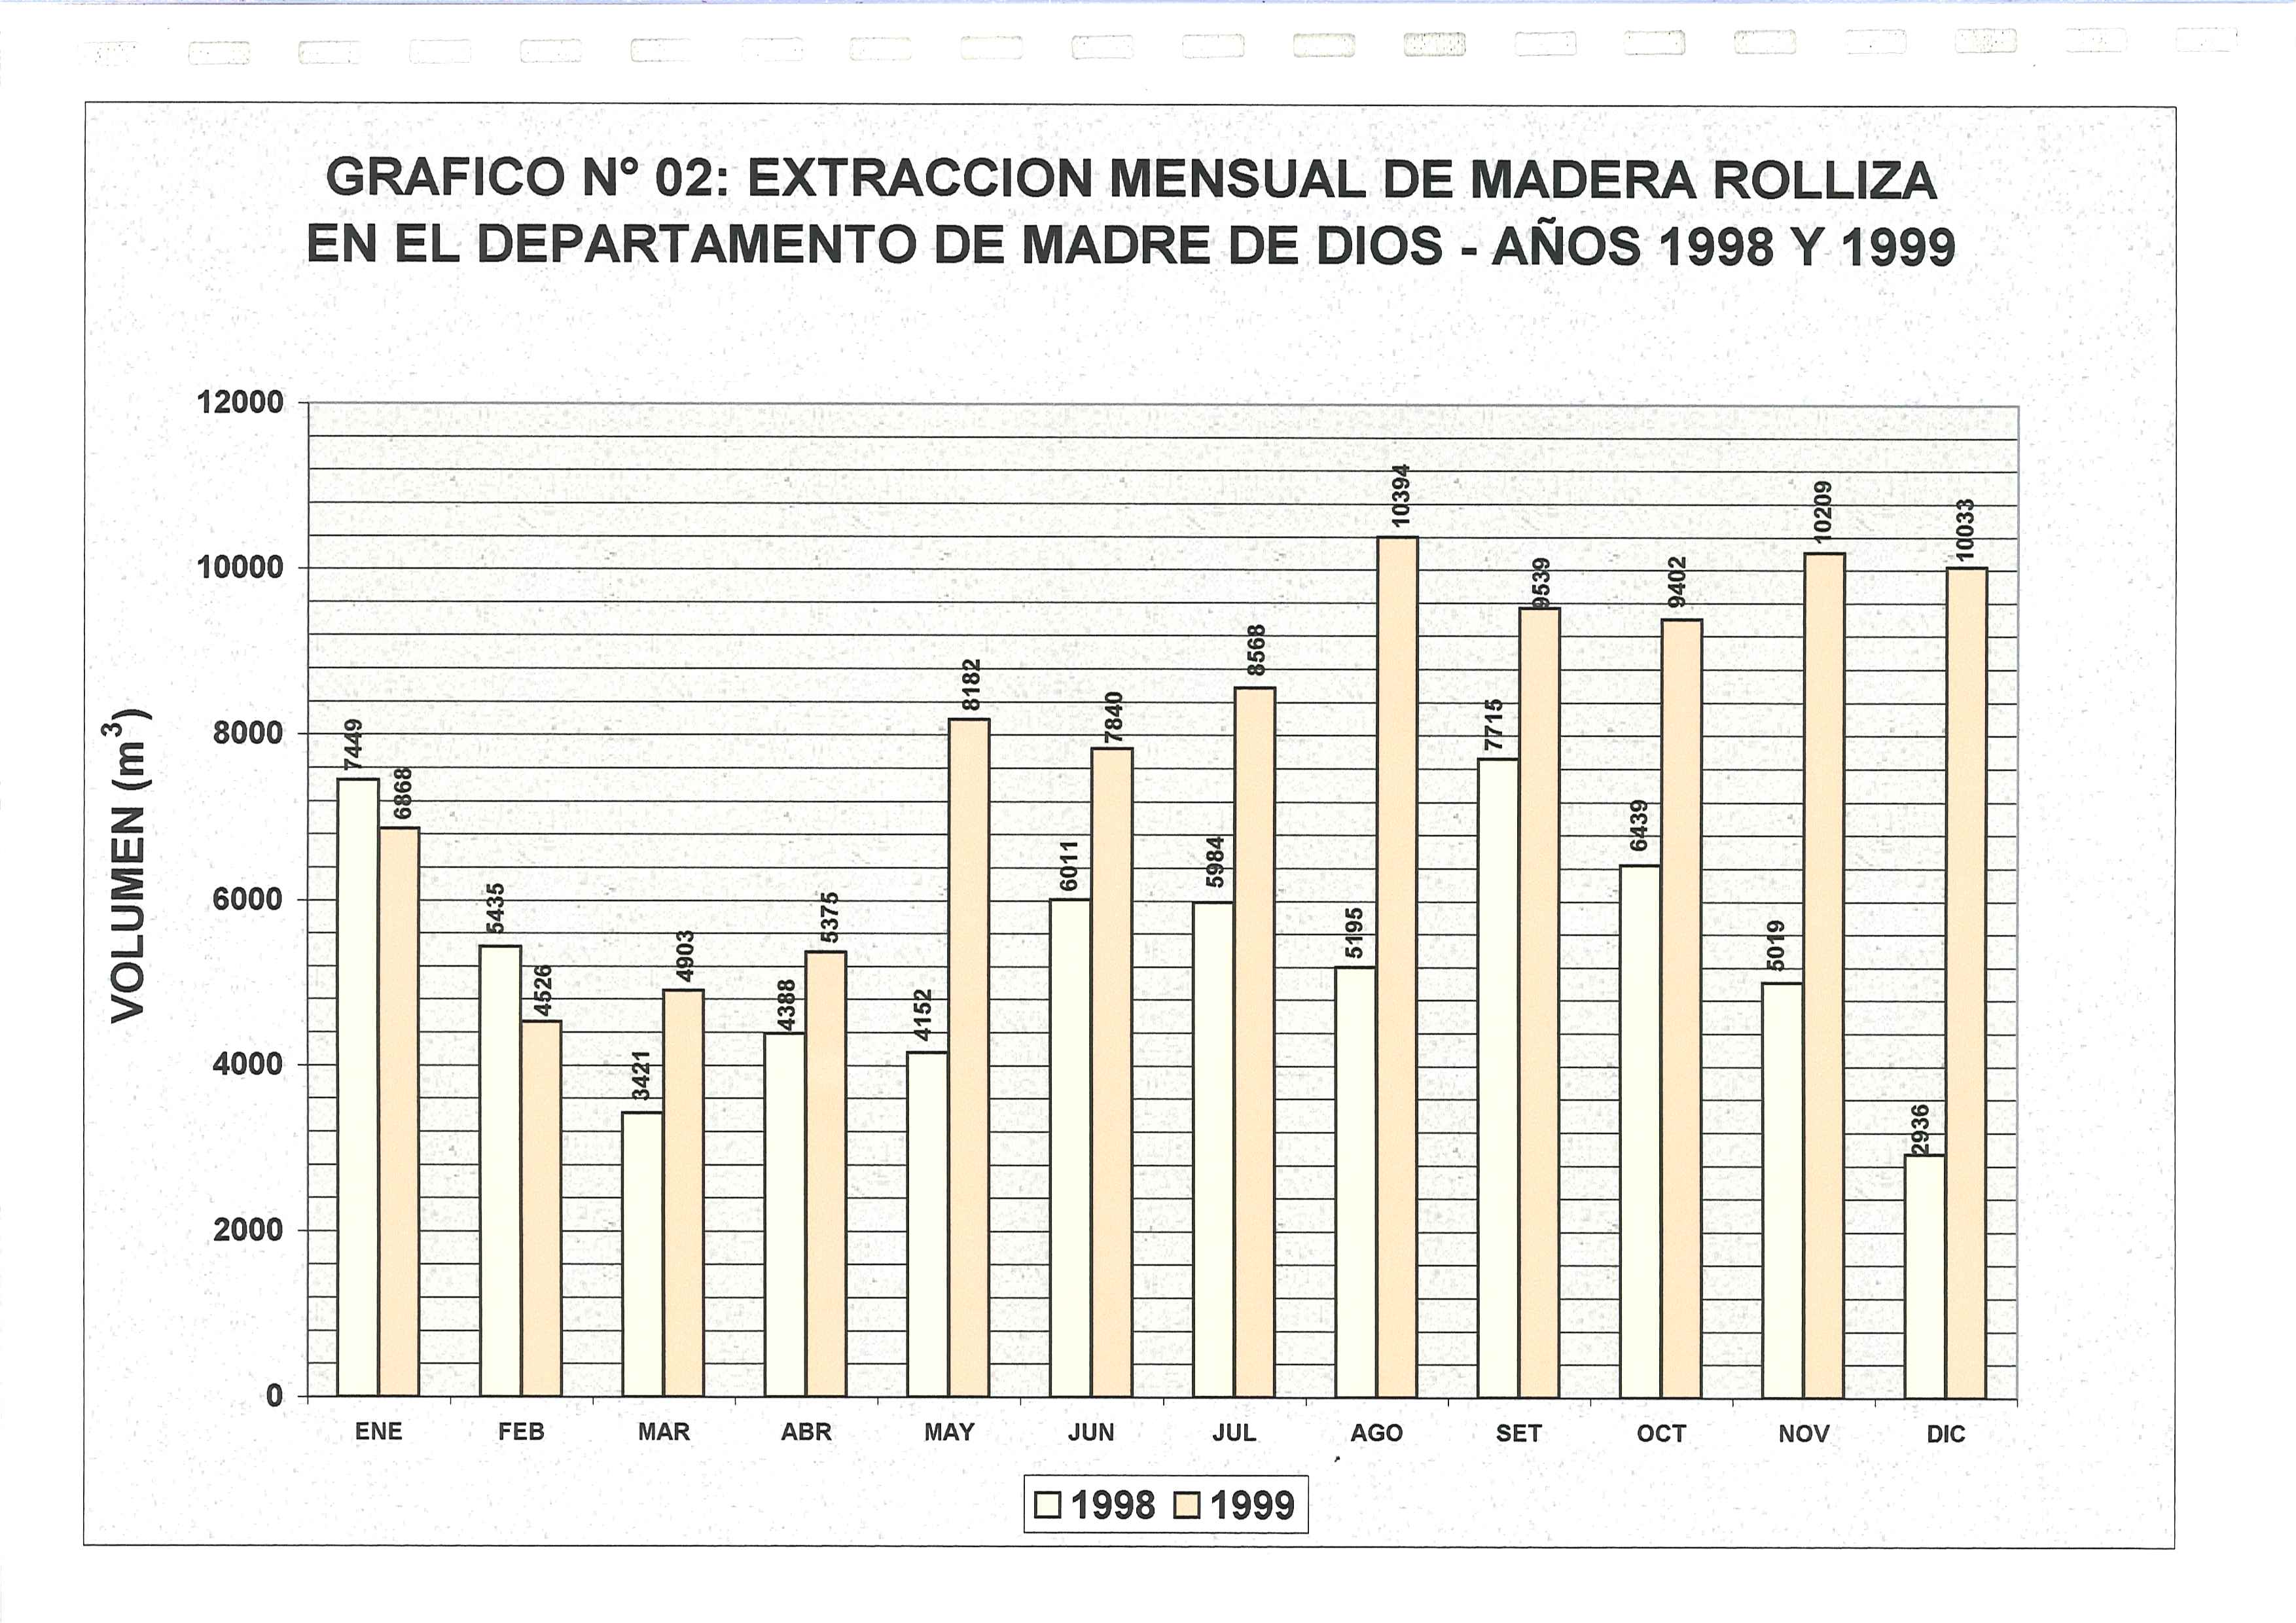 ,.. " GRAFICO N 02: EXTRACCION MENSUAL DE MADERA ROLLIZA EN EL DEPARTAMENTO DE MADRE DE DIOS - ANOS 1998 Y 1999 12000 10000 C'? - 8000 E z w :E 6000 ::J...J 0 > 4000 2000 o... Q) Q) ~ eo.